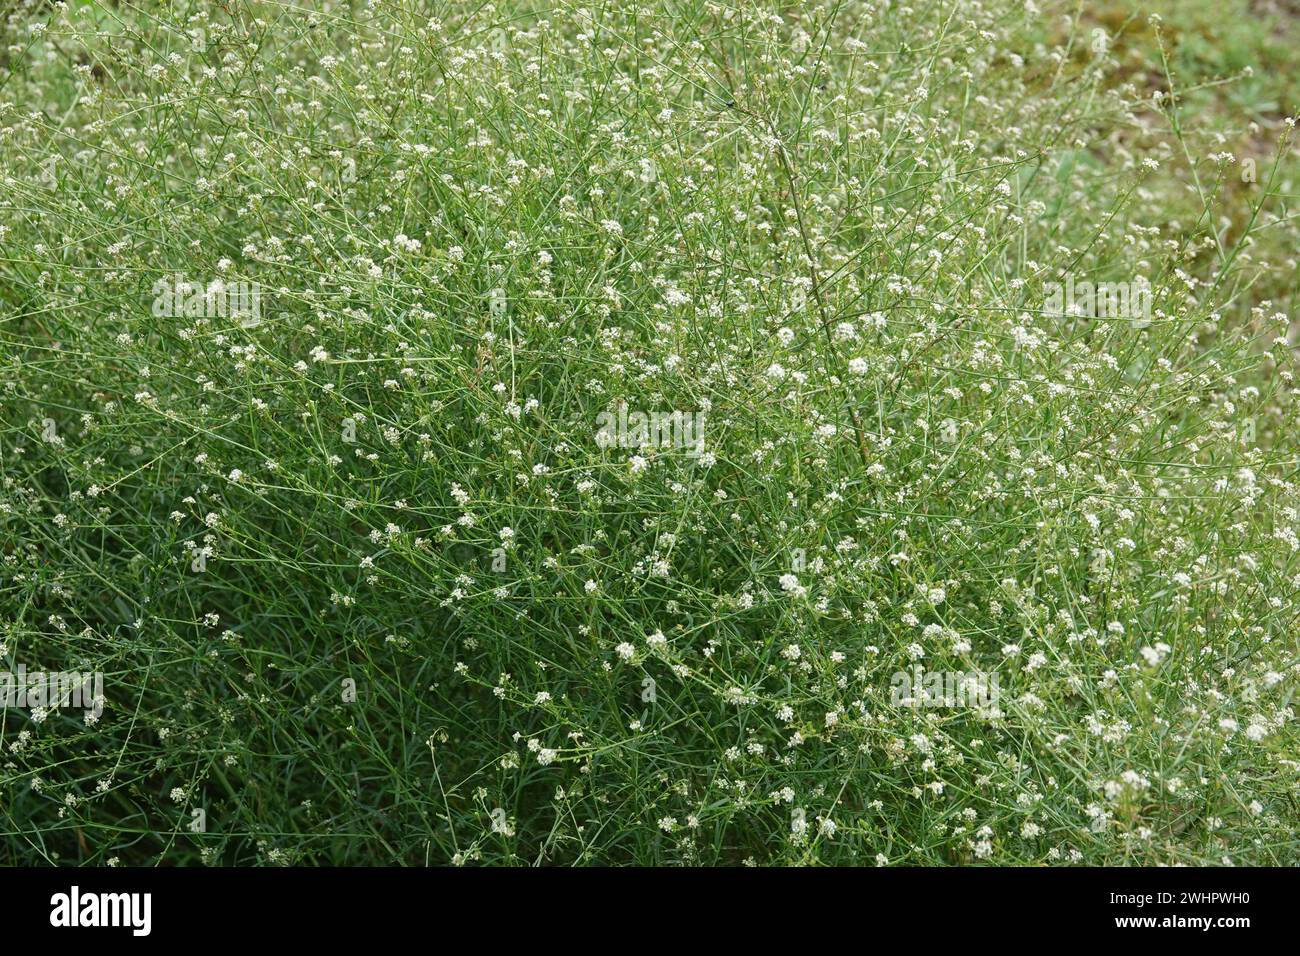 Lepidium graminifolium, grassleaf pepperweed Stock Photo